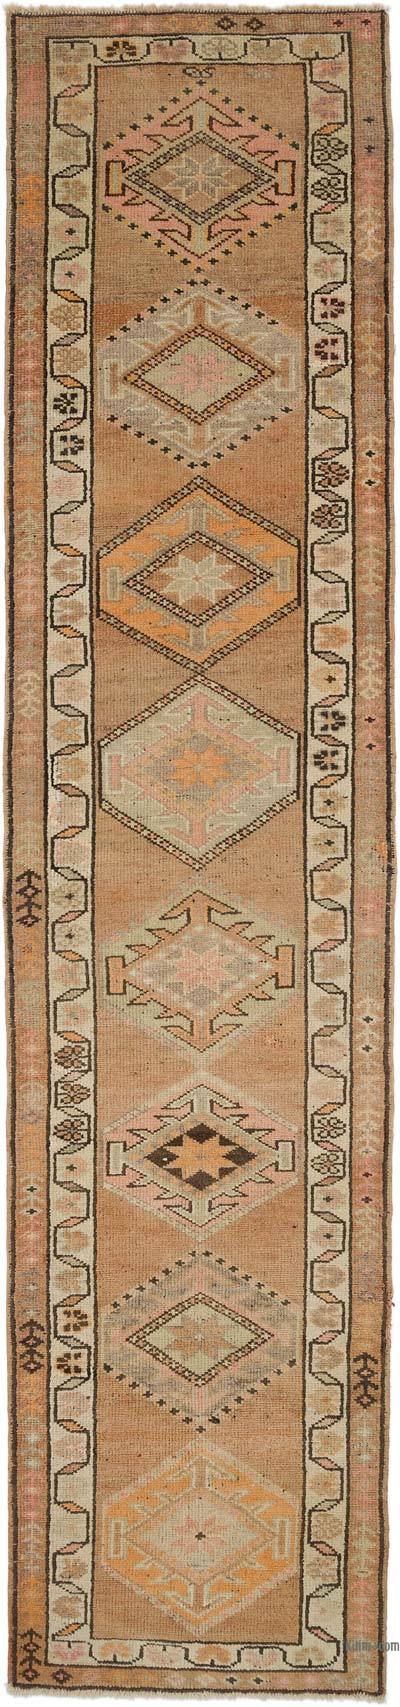 复古土耳其跑步者地毯-3'1“ x 13'7”（37英寸x 163英寸）